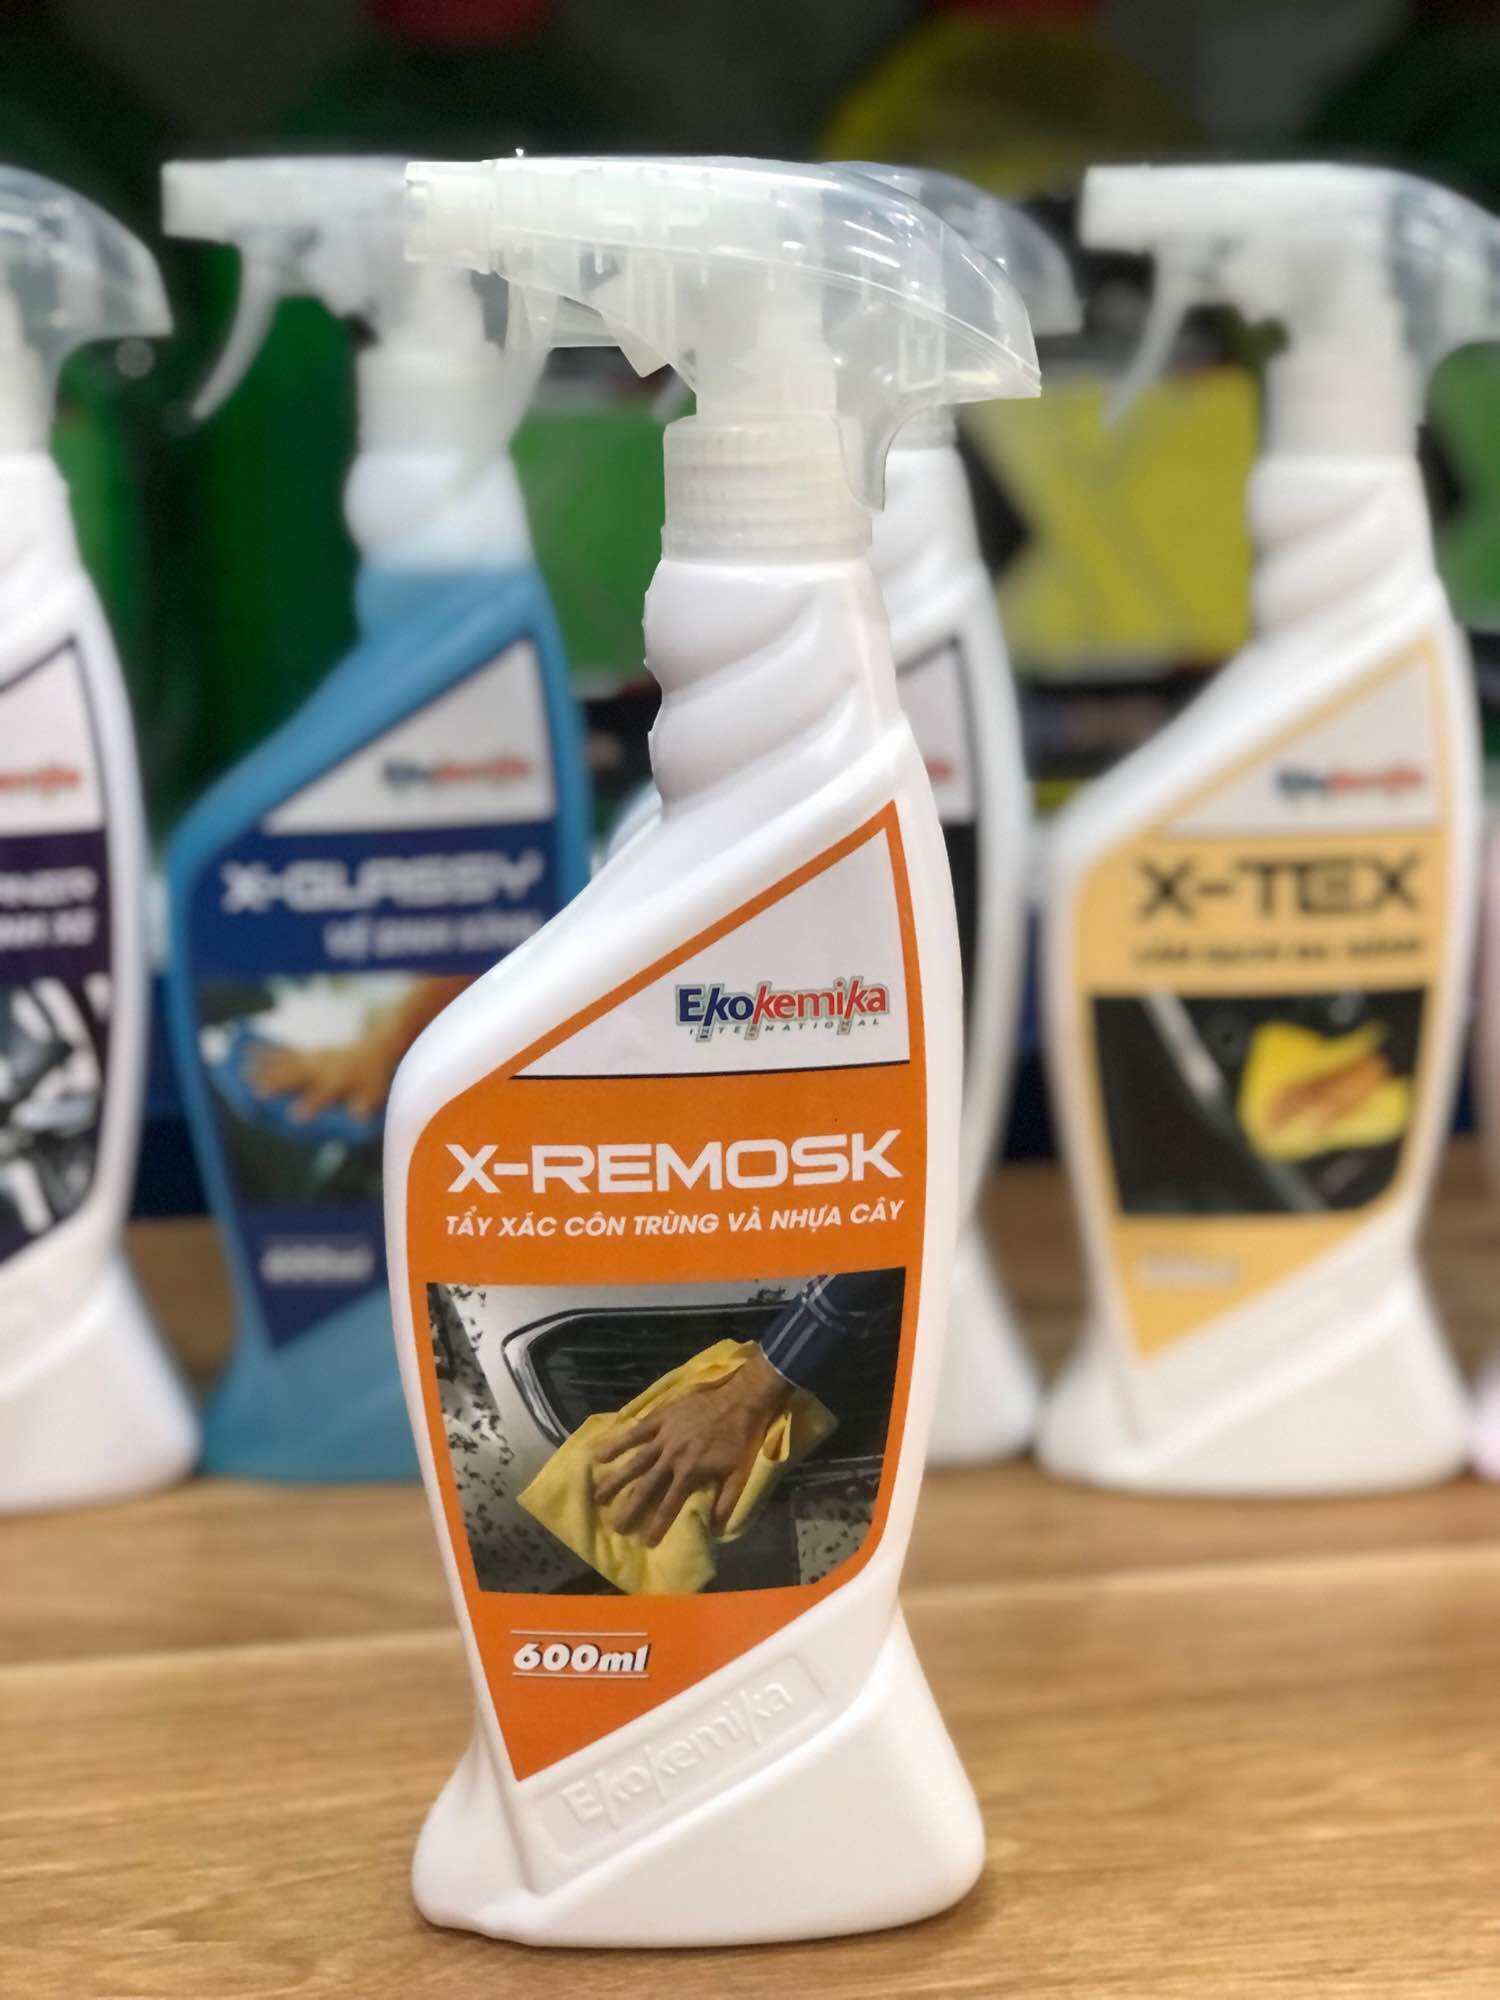 Dung dịch tẩy nhựa cây - tẩy xác côn trùng X- REMOSK chính hãng Ekokemika